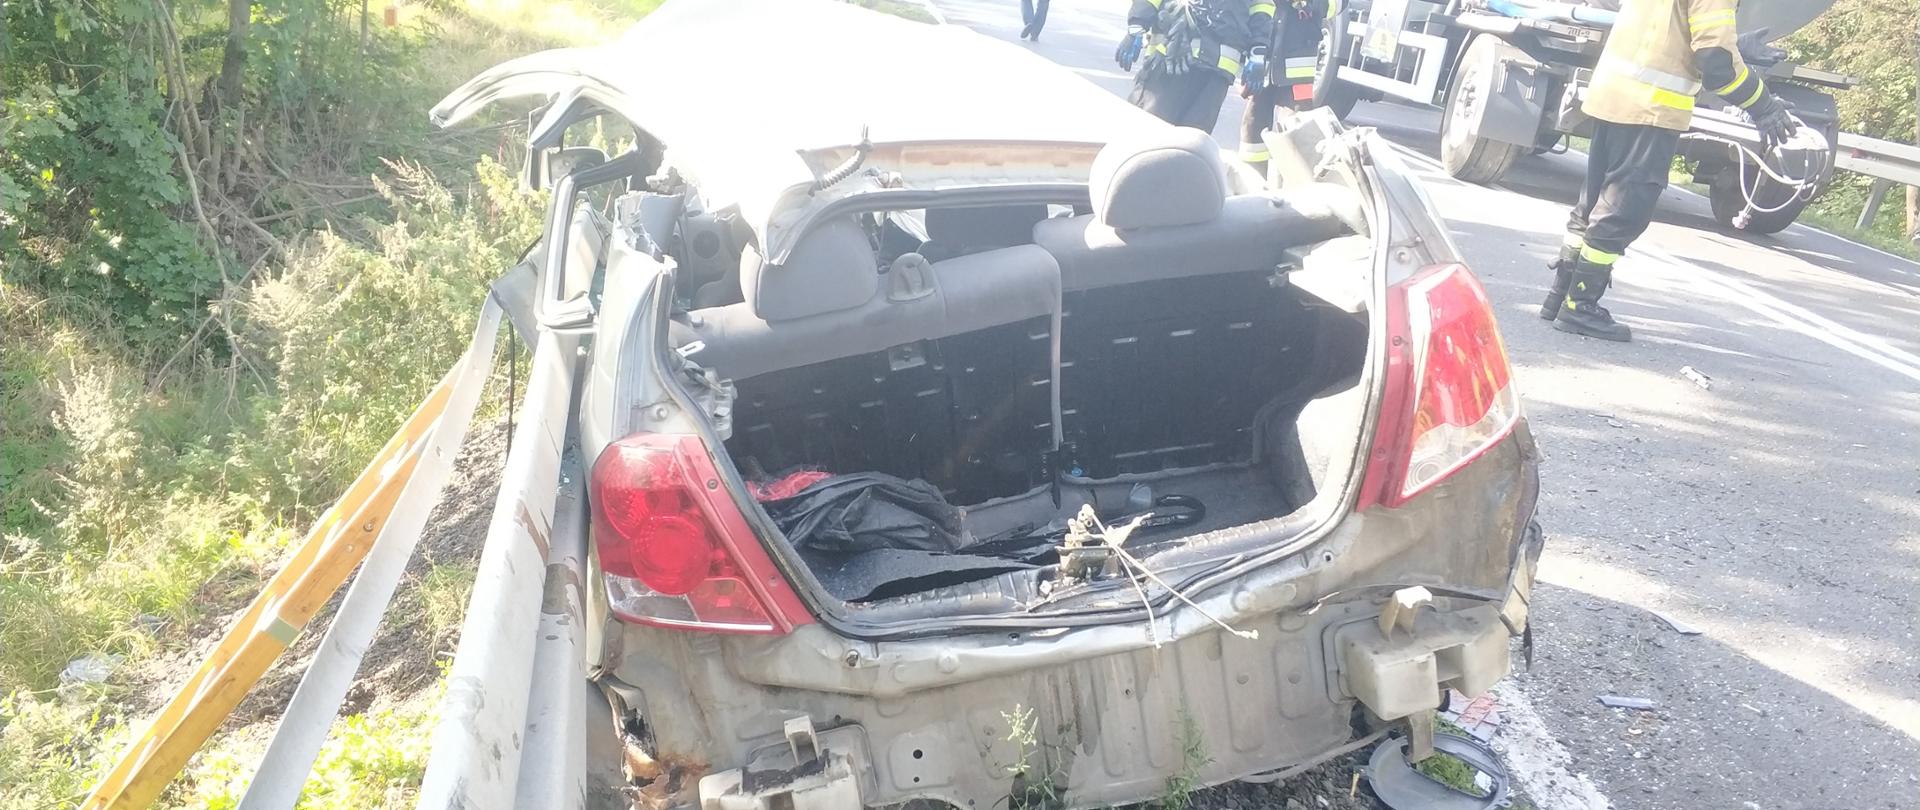 Zdjęcie przedstawia rozbity pojazd na miejscu wypadku.